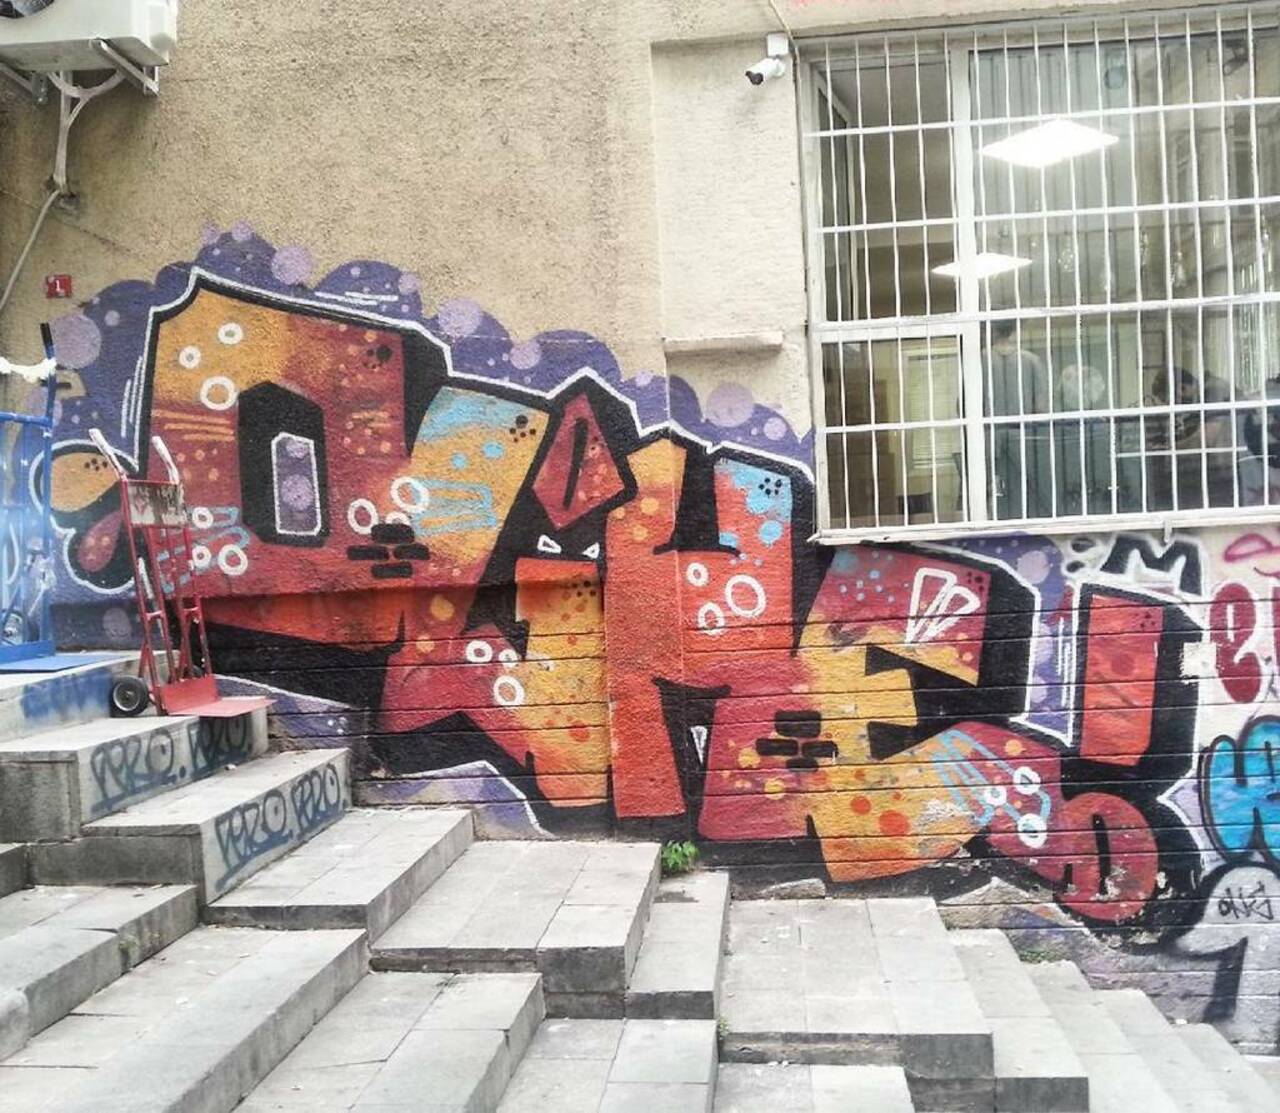 #streetart #graffiti #publicart #urbanart #sokaksanatı #streetartistanbul #istanbulstreetart #graffitiart by wallen… http://t.co/UFqOJEB1x5